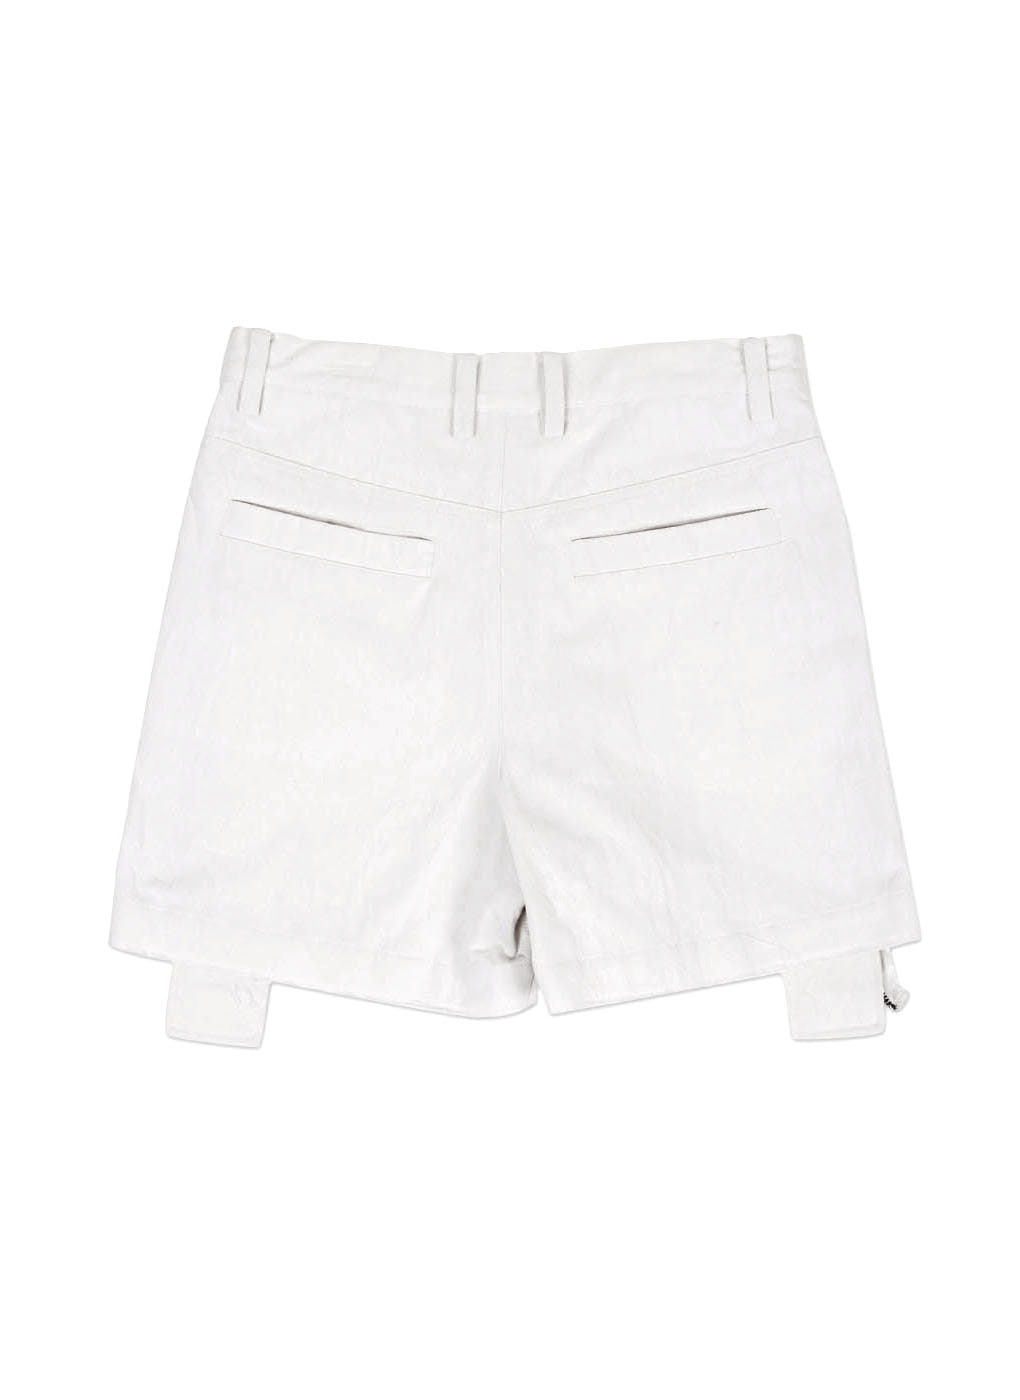 White Denim Zipper Shorts